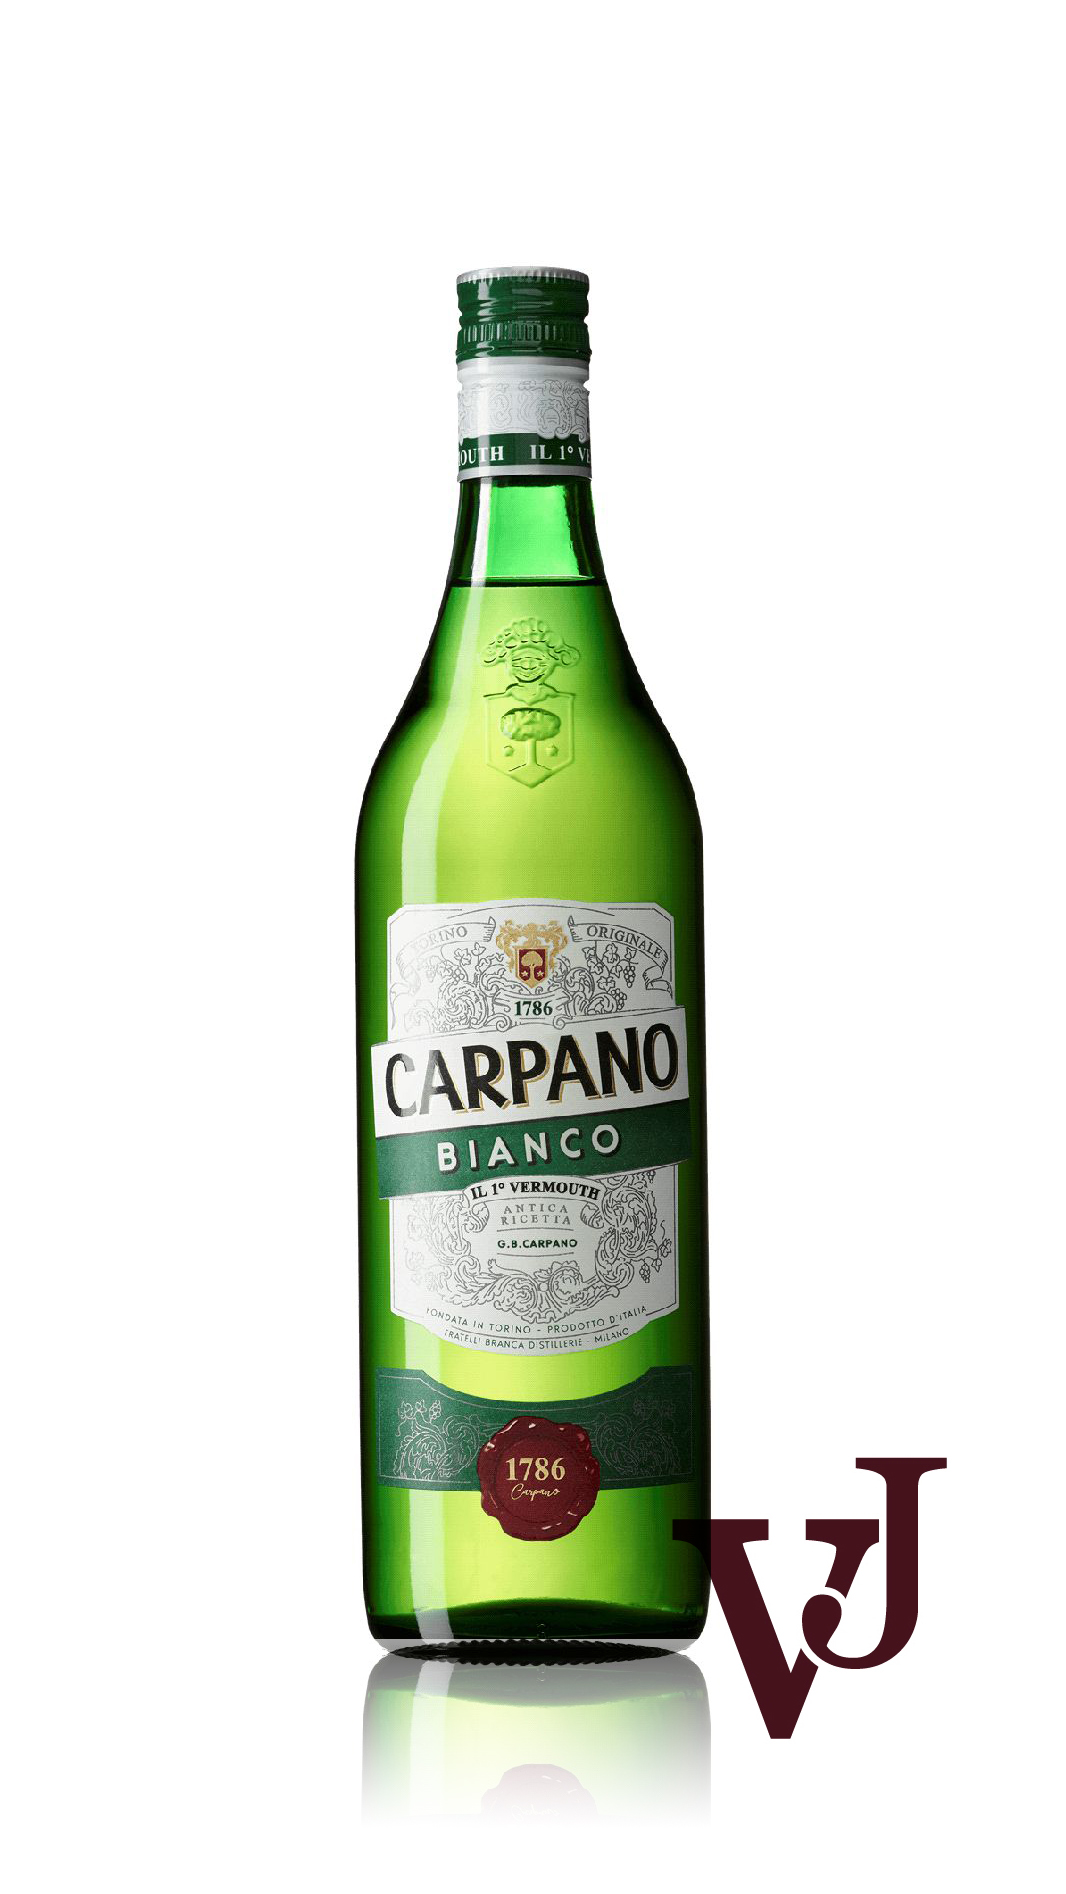 Övrigt vin - Carpano Bianco artikel nummer 7446701 från producenten Fratelli Branca från området Italien